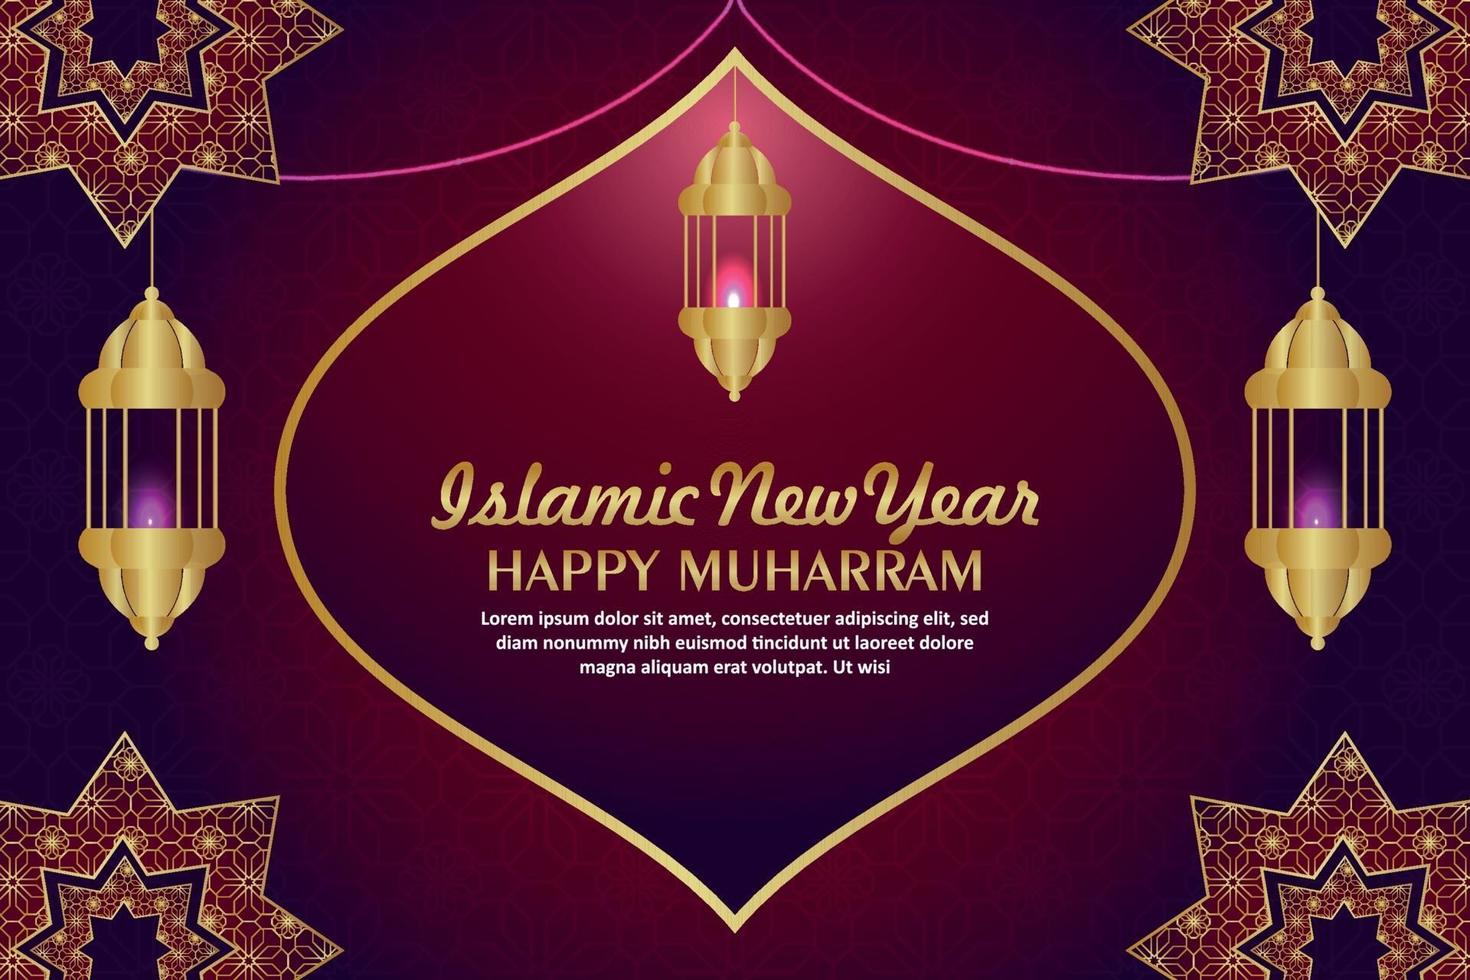 islamiskt nyttår lyckligt muharram firande gratulationskort med kreativ lykta på mönster bakgrund vektor